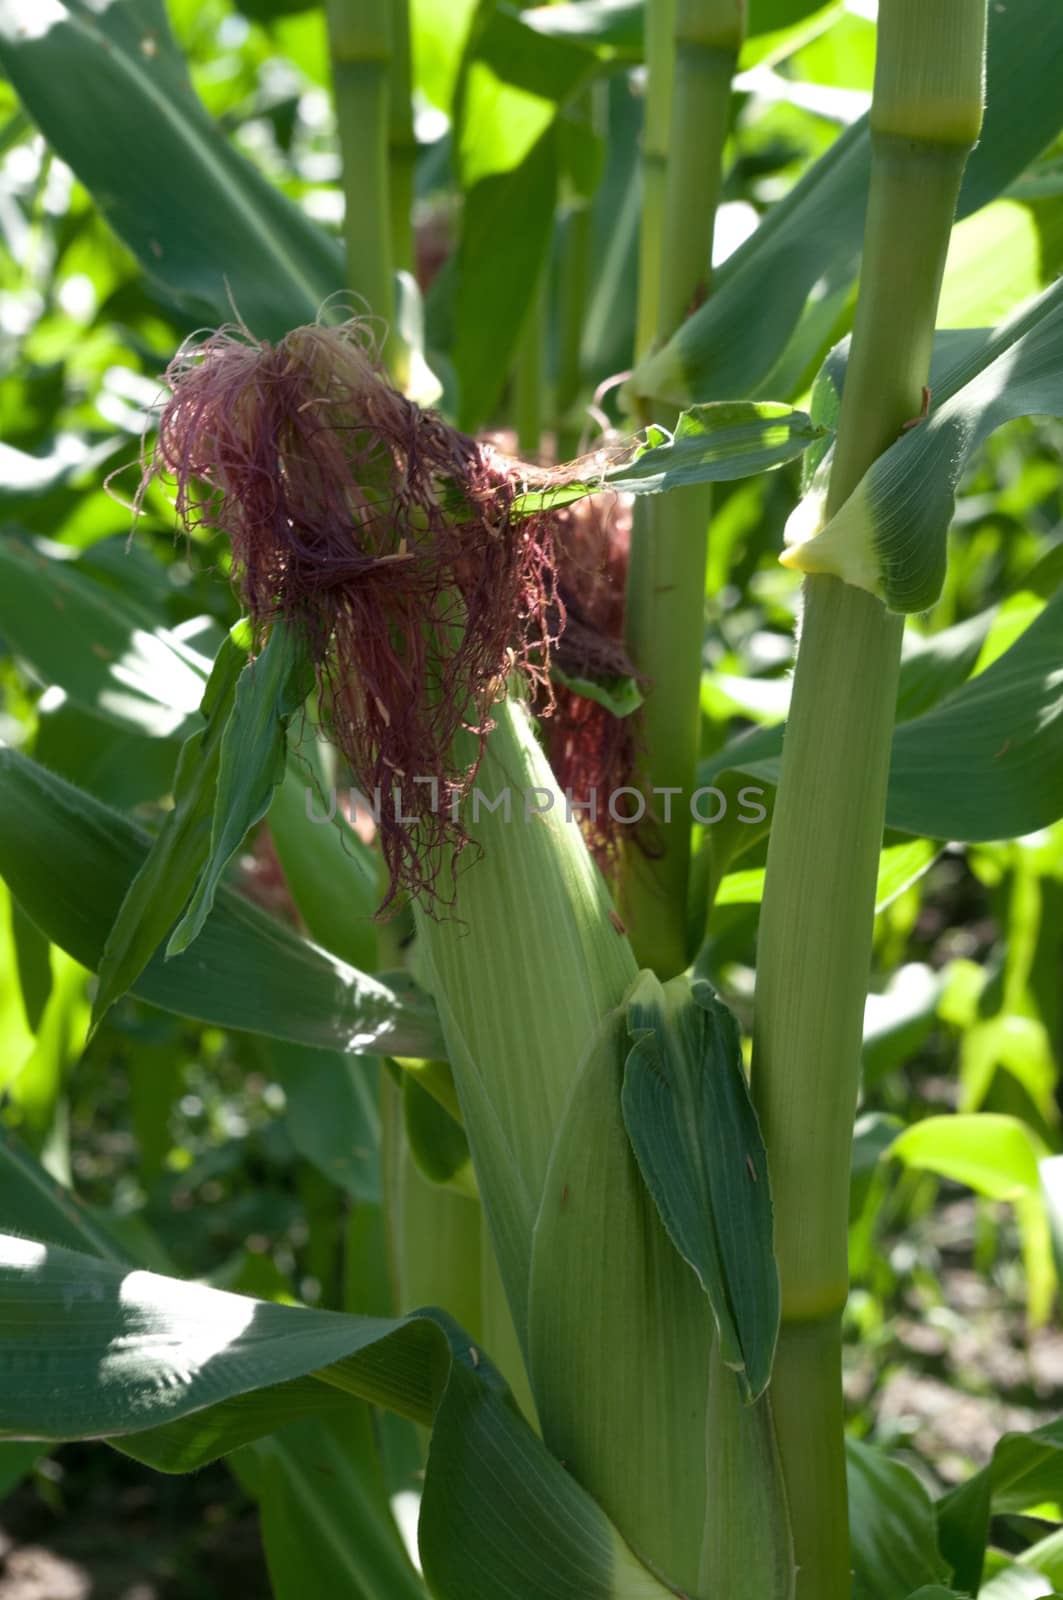 Ear of Corn by edcorey